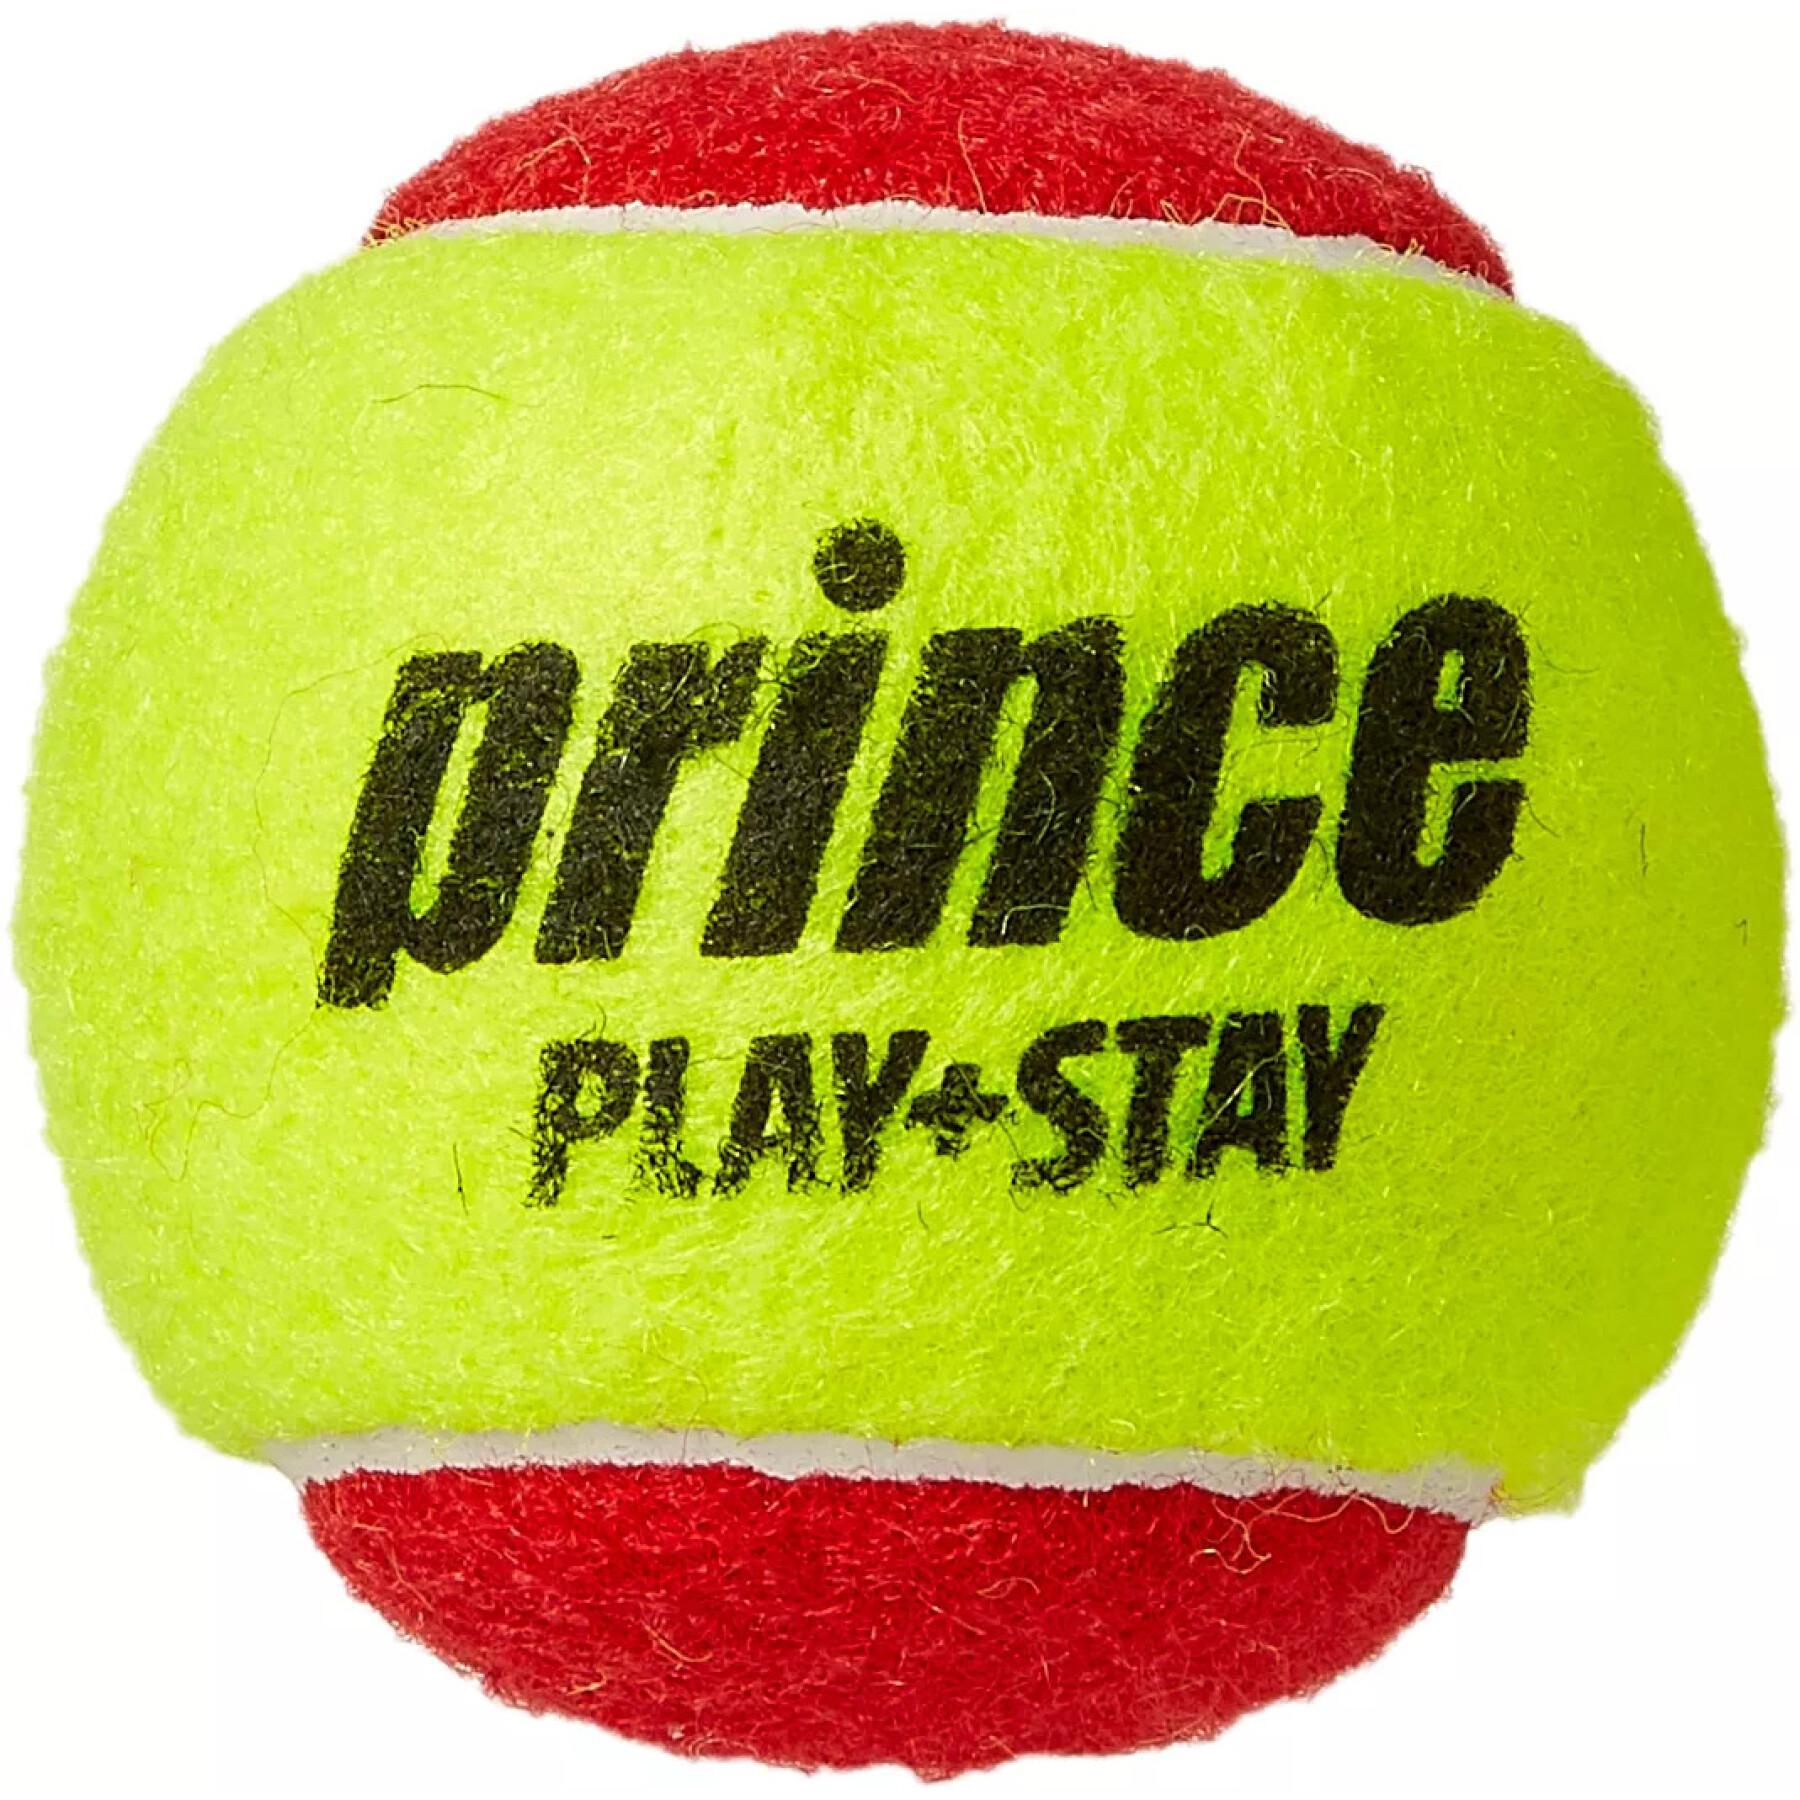 Sachet de 12 balles de tennis Prince Play & Stay – stage 3 (felt)